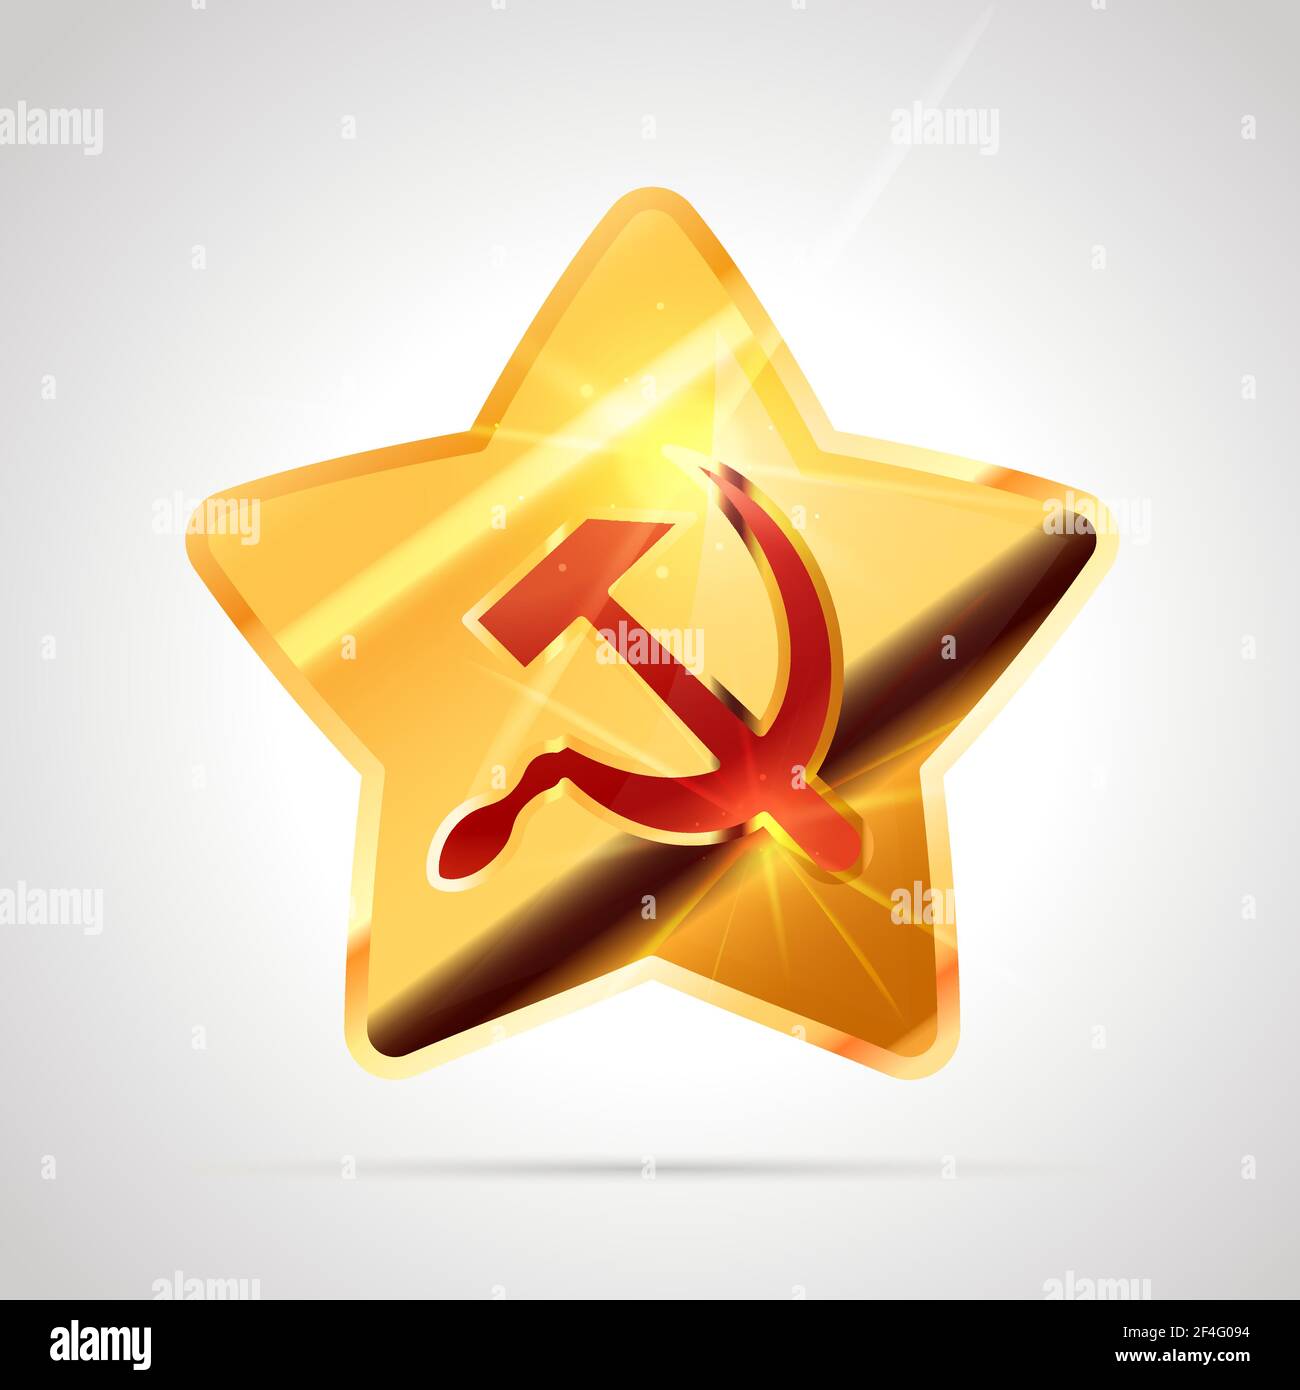 Simbolo dorato brillante a forma di stella con falce sovietica rossa e martello, simbolo dell'URSS comunista isolato su bianco Illustrazione Vettoriale